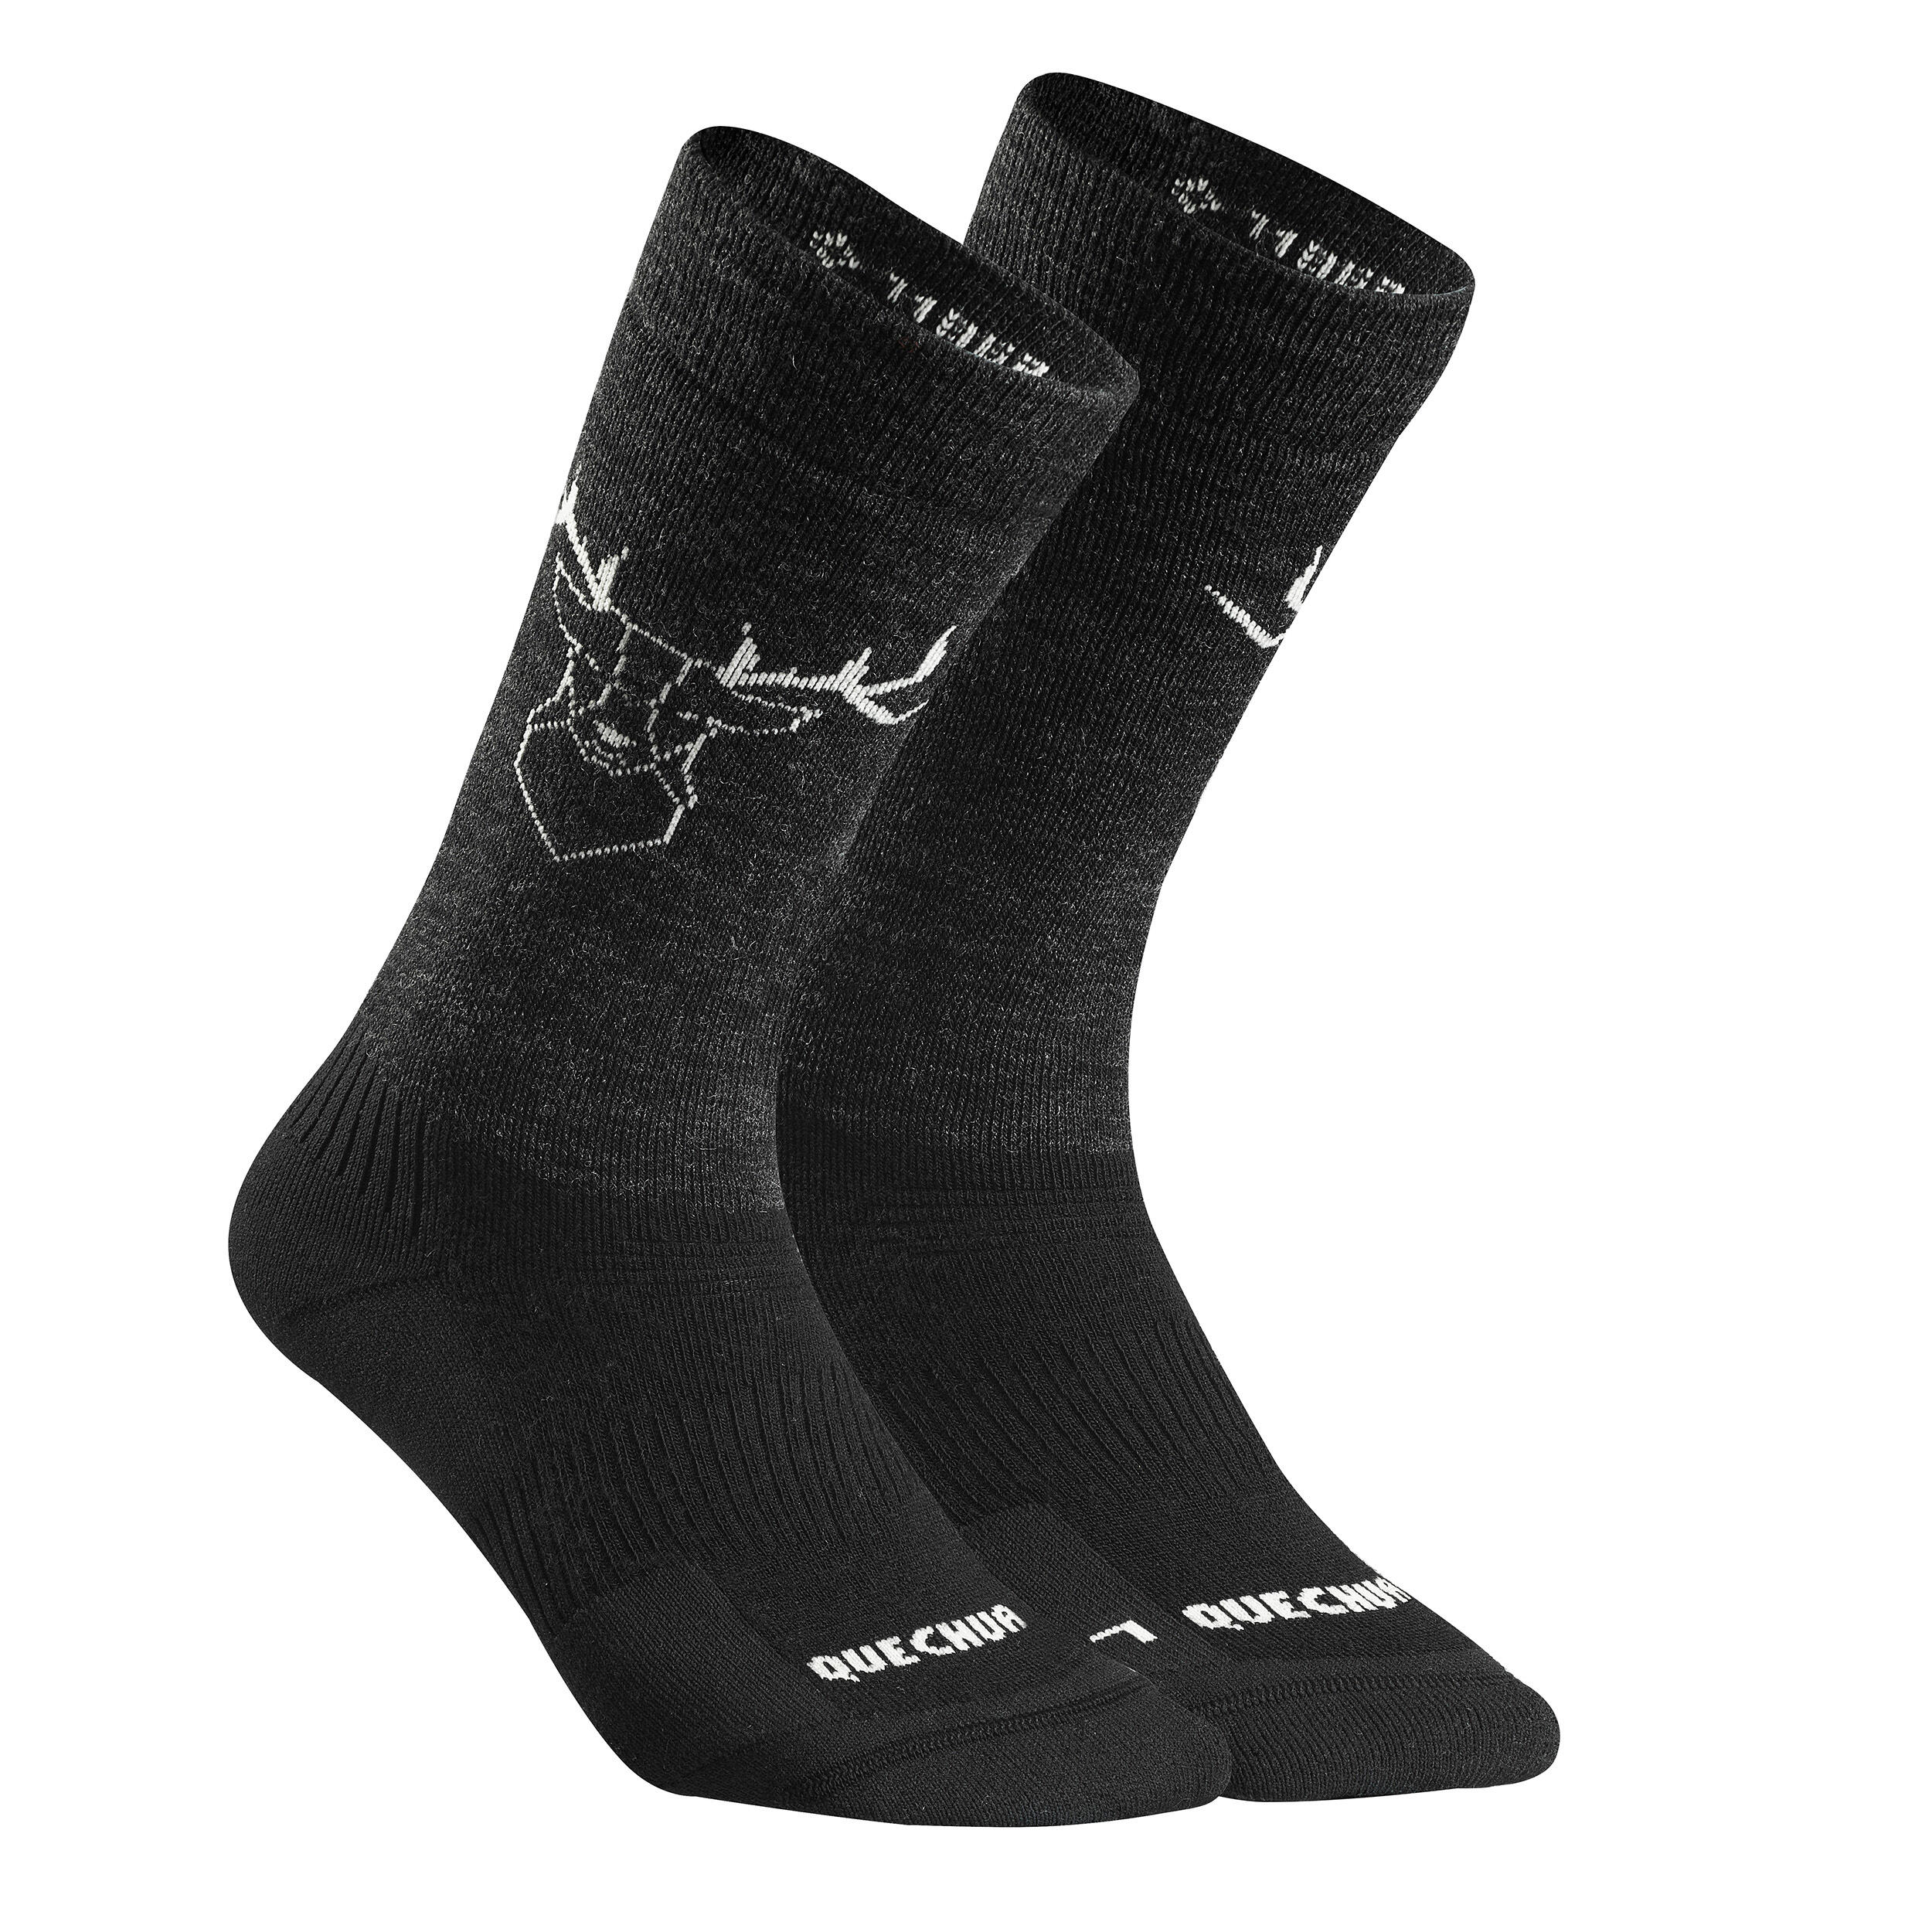 Warm  Hiking Socks - SH500 ULTRA-WARM MID - 2 Pairs 2/6